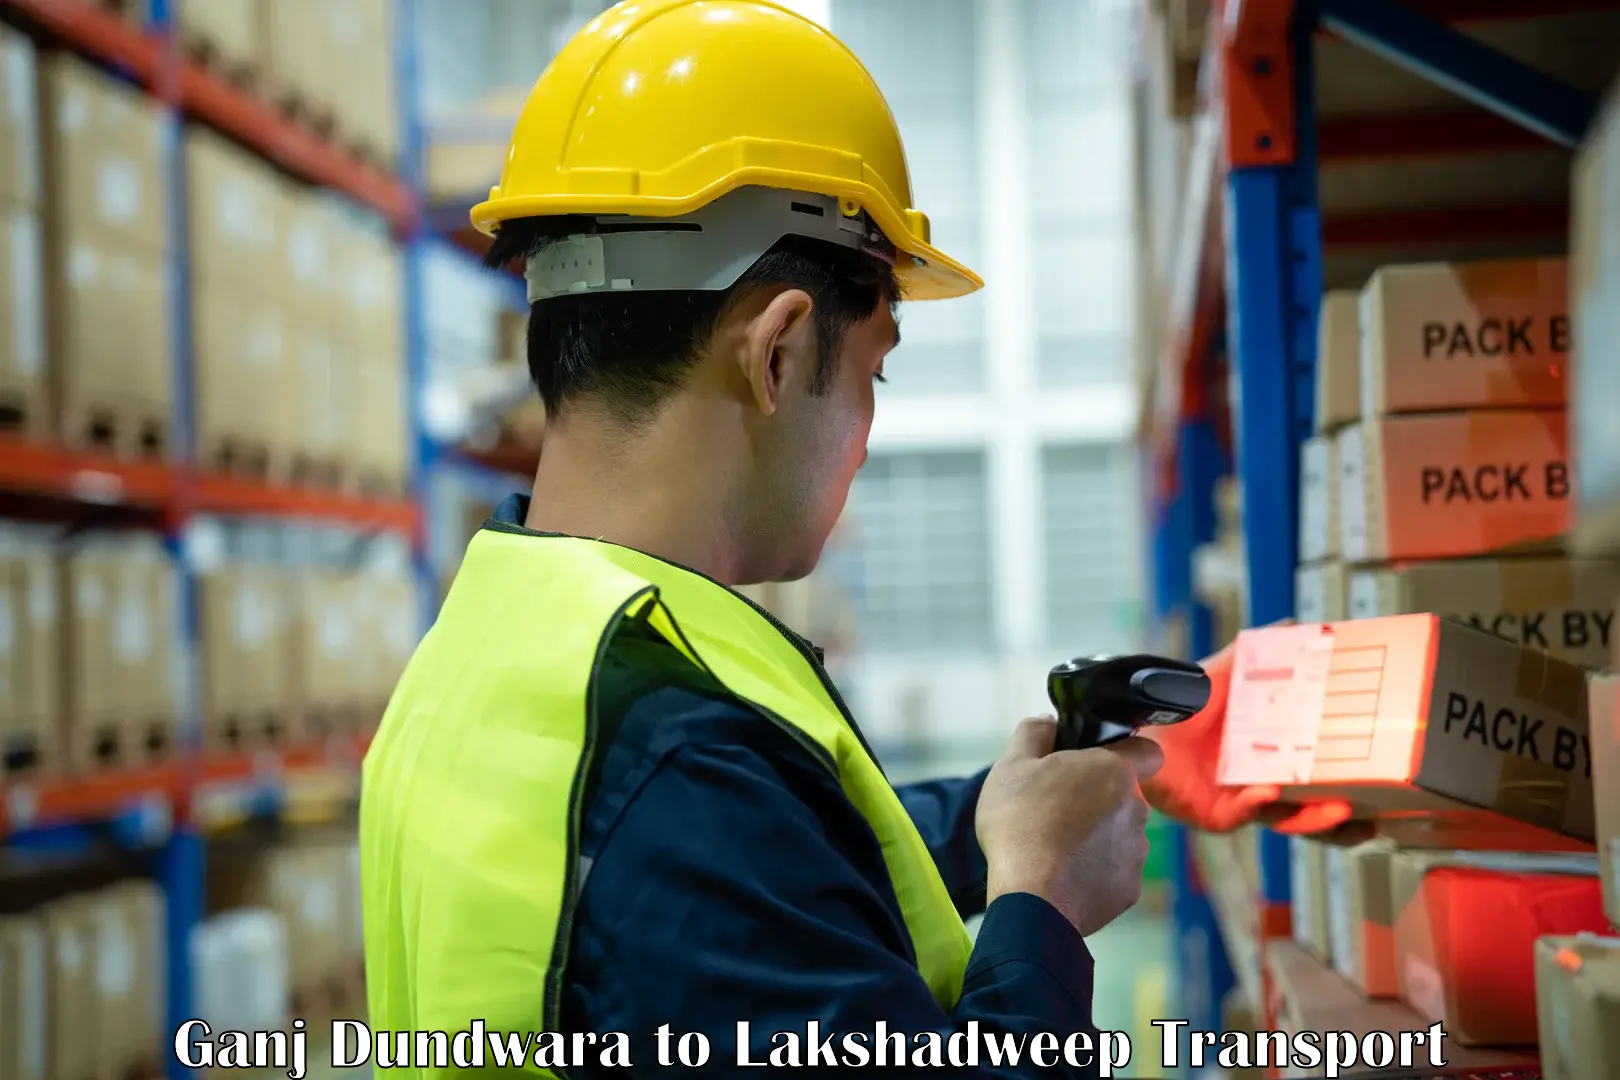 Truck transport companies in India Ganj Dundwara to Lakshadweep